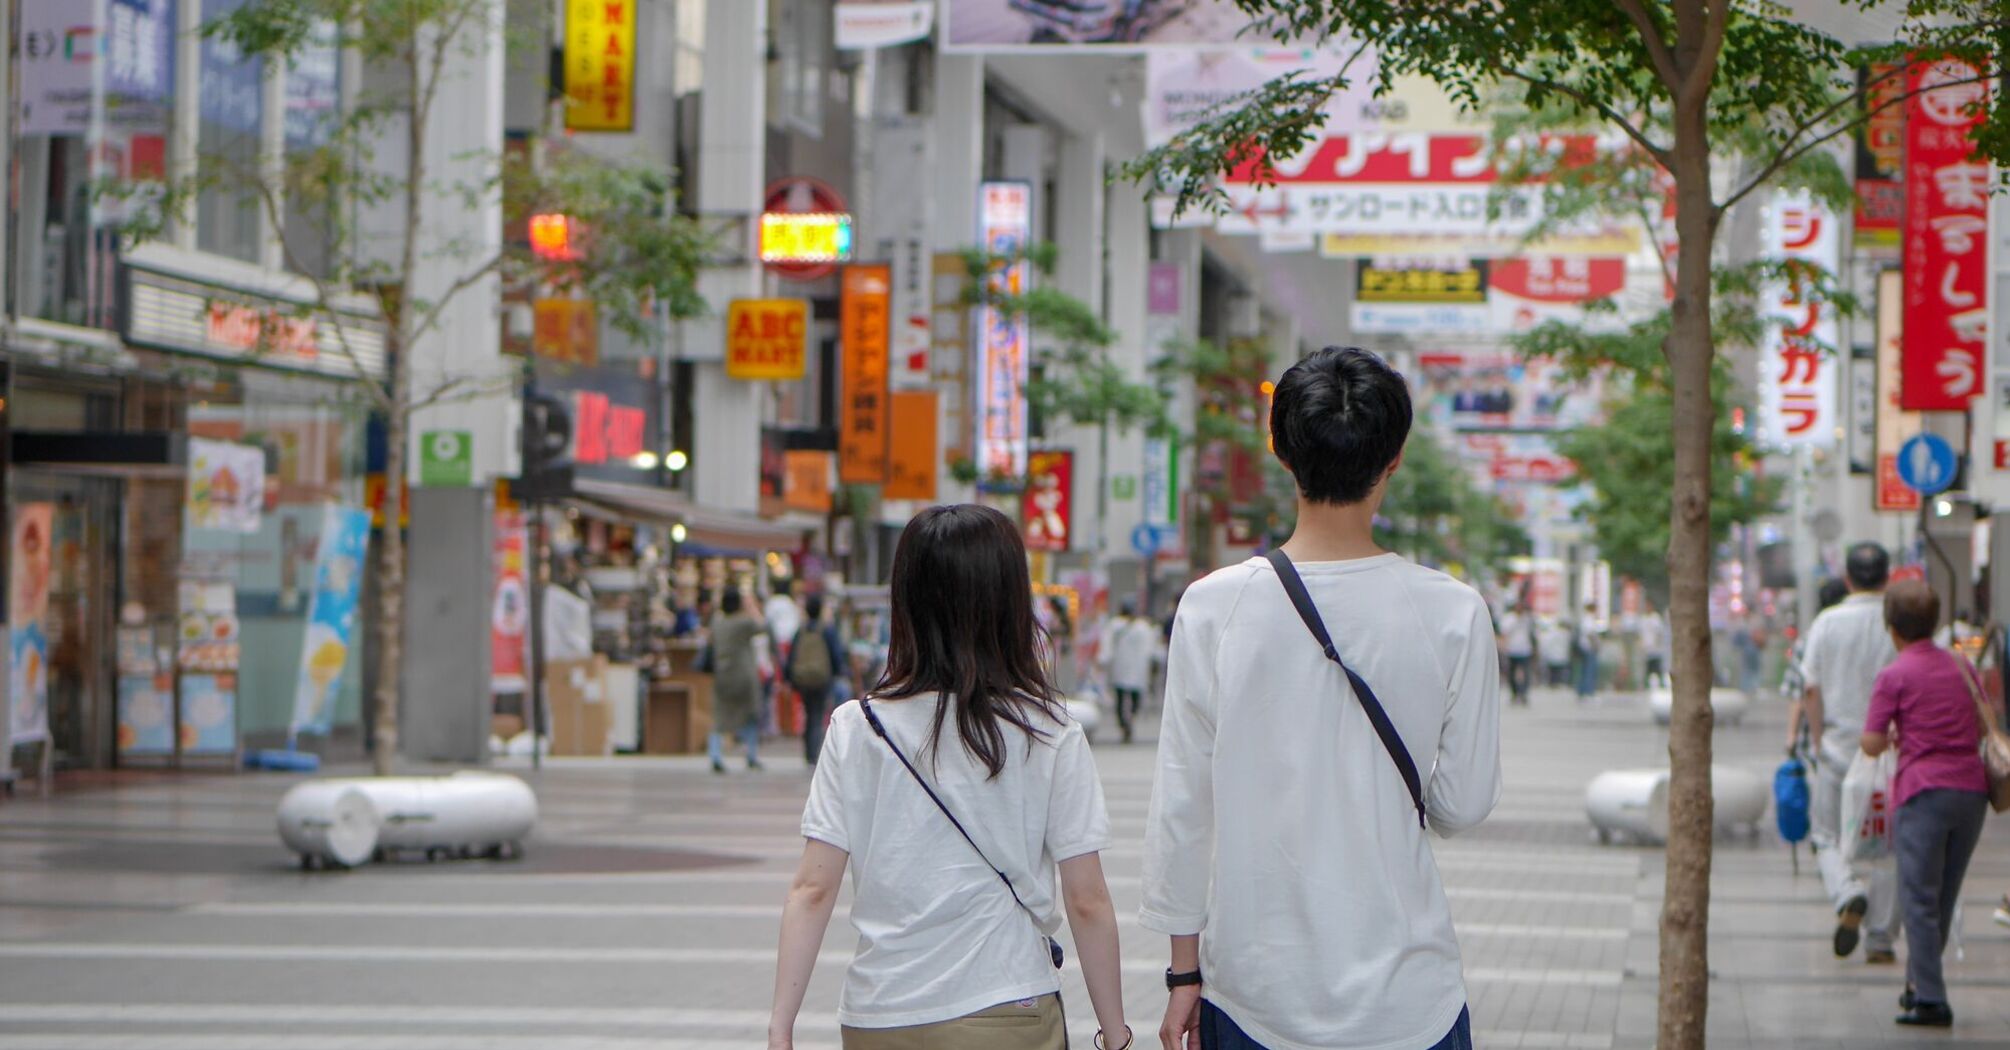 Couple walking on a street in Japan